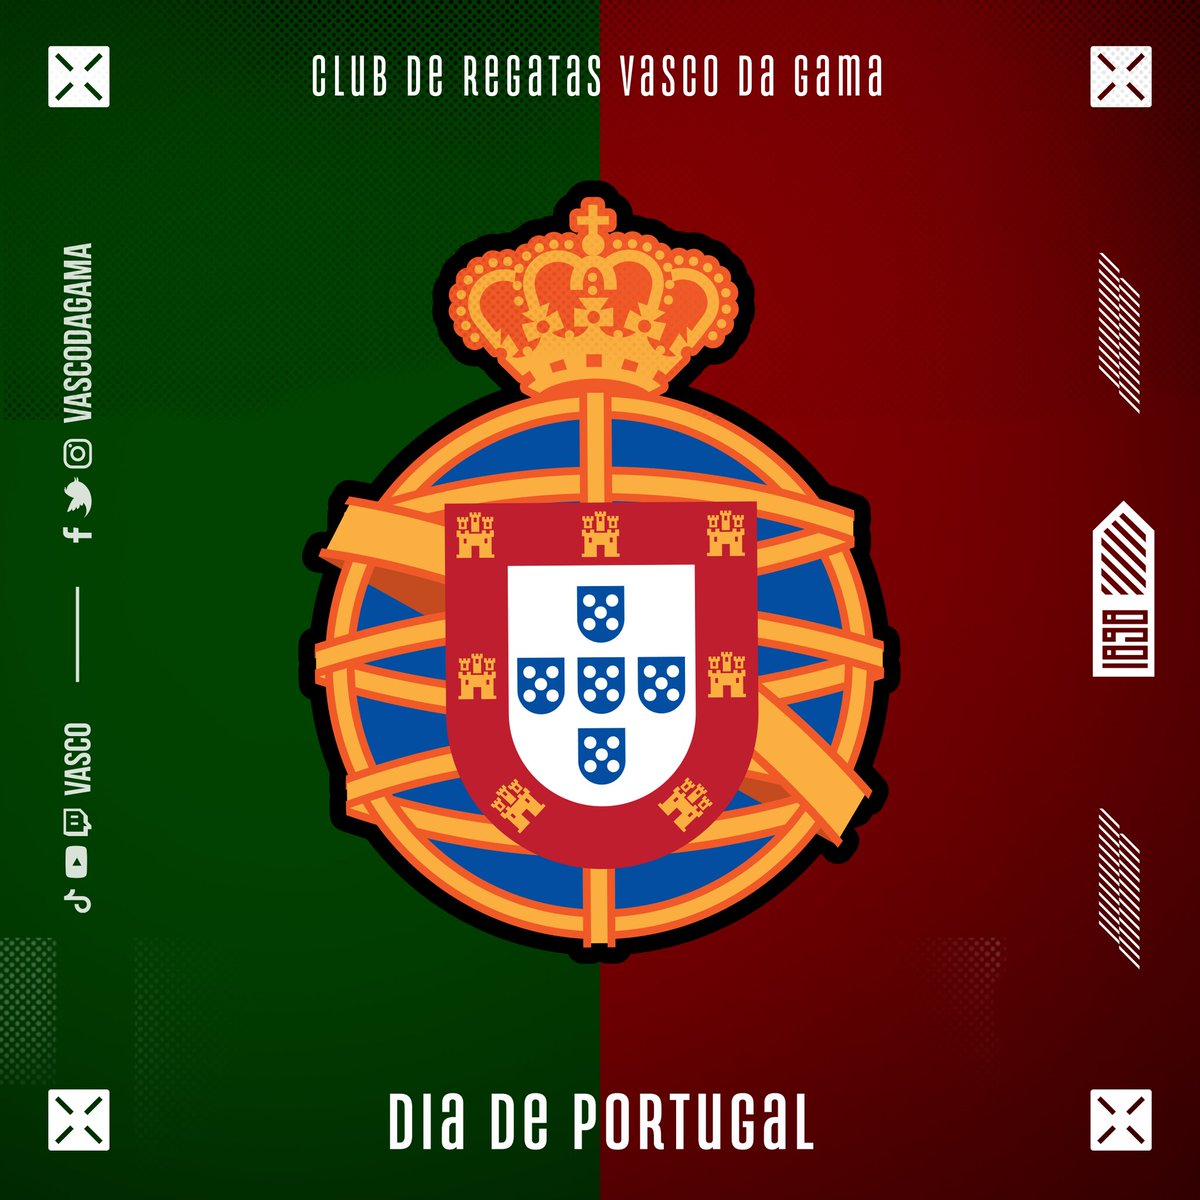 10 de junho - Dia de Portugal, Camões e das Comunidades Portuguesas 🇵🇹

Como o maior orgulho desportivo da comunidade Luso Brasileira, celebramos esta data honrando as nossas raízes.

#VascoDaGama #DiaDePortugal